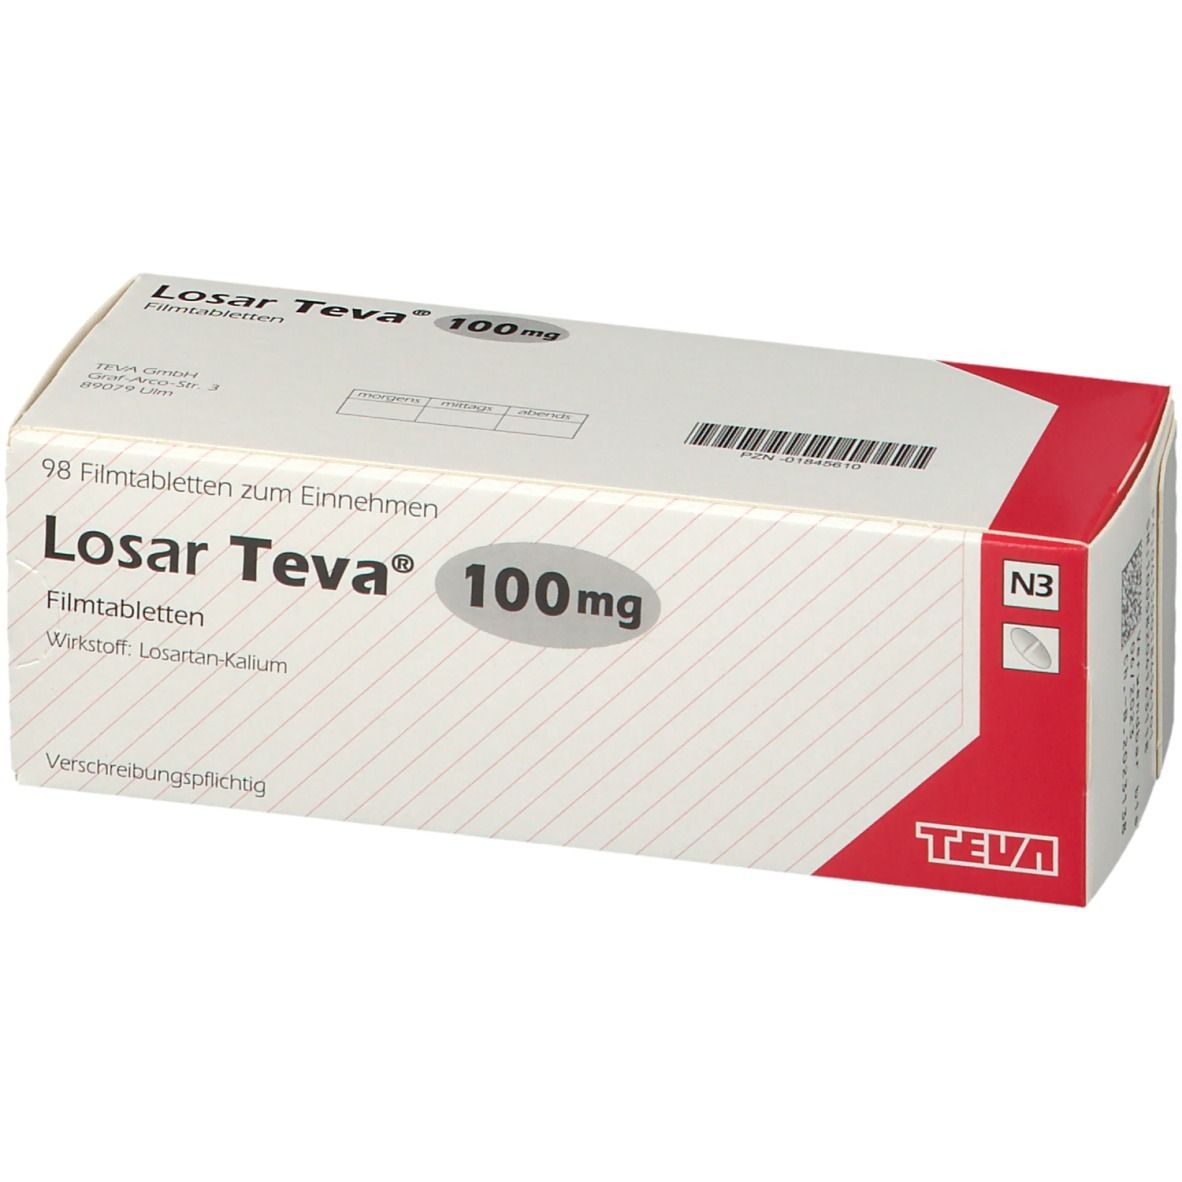 Losar Teva® 100 mg